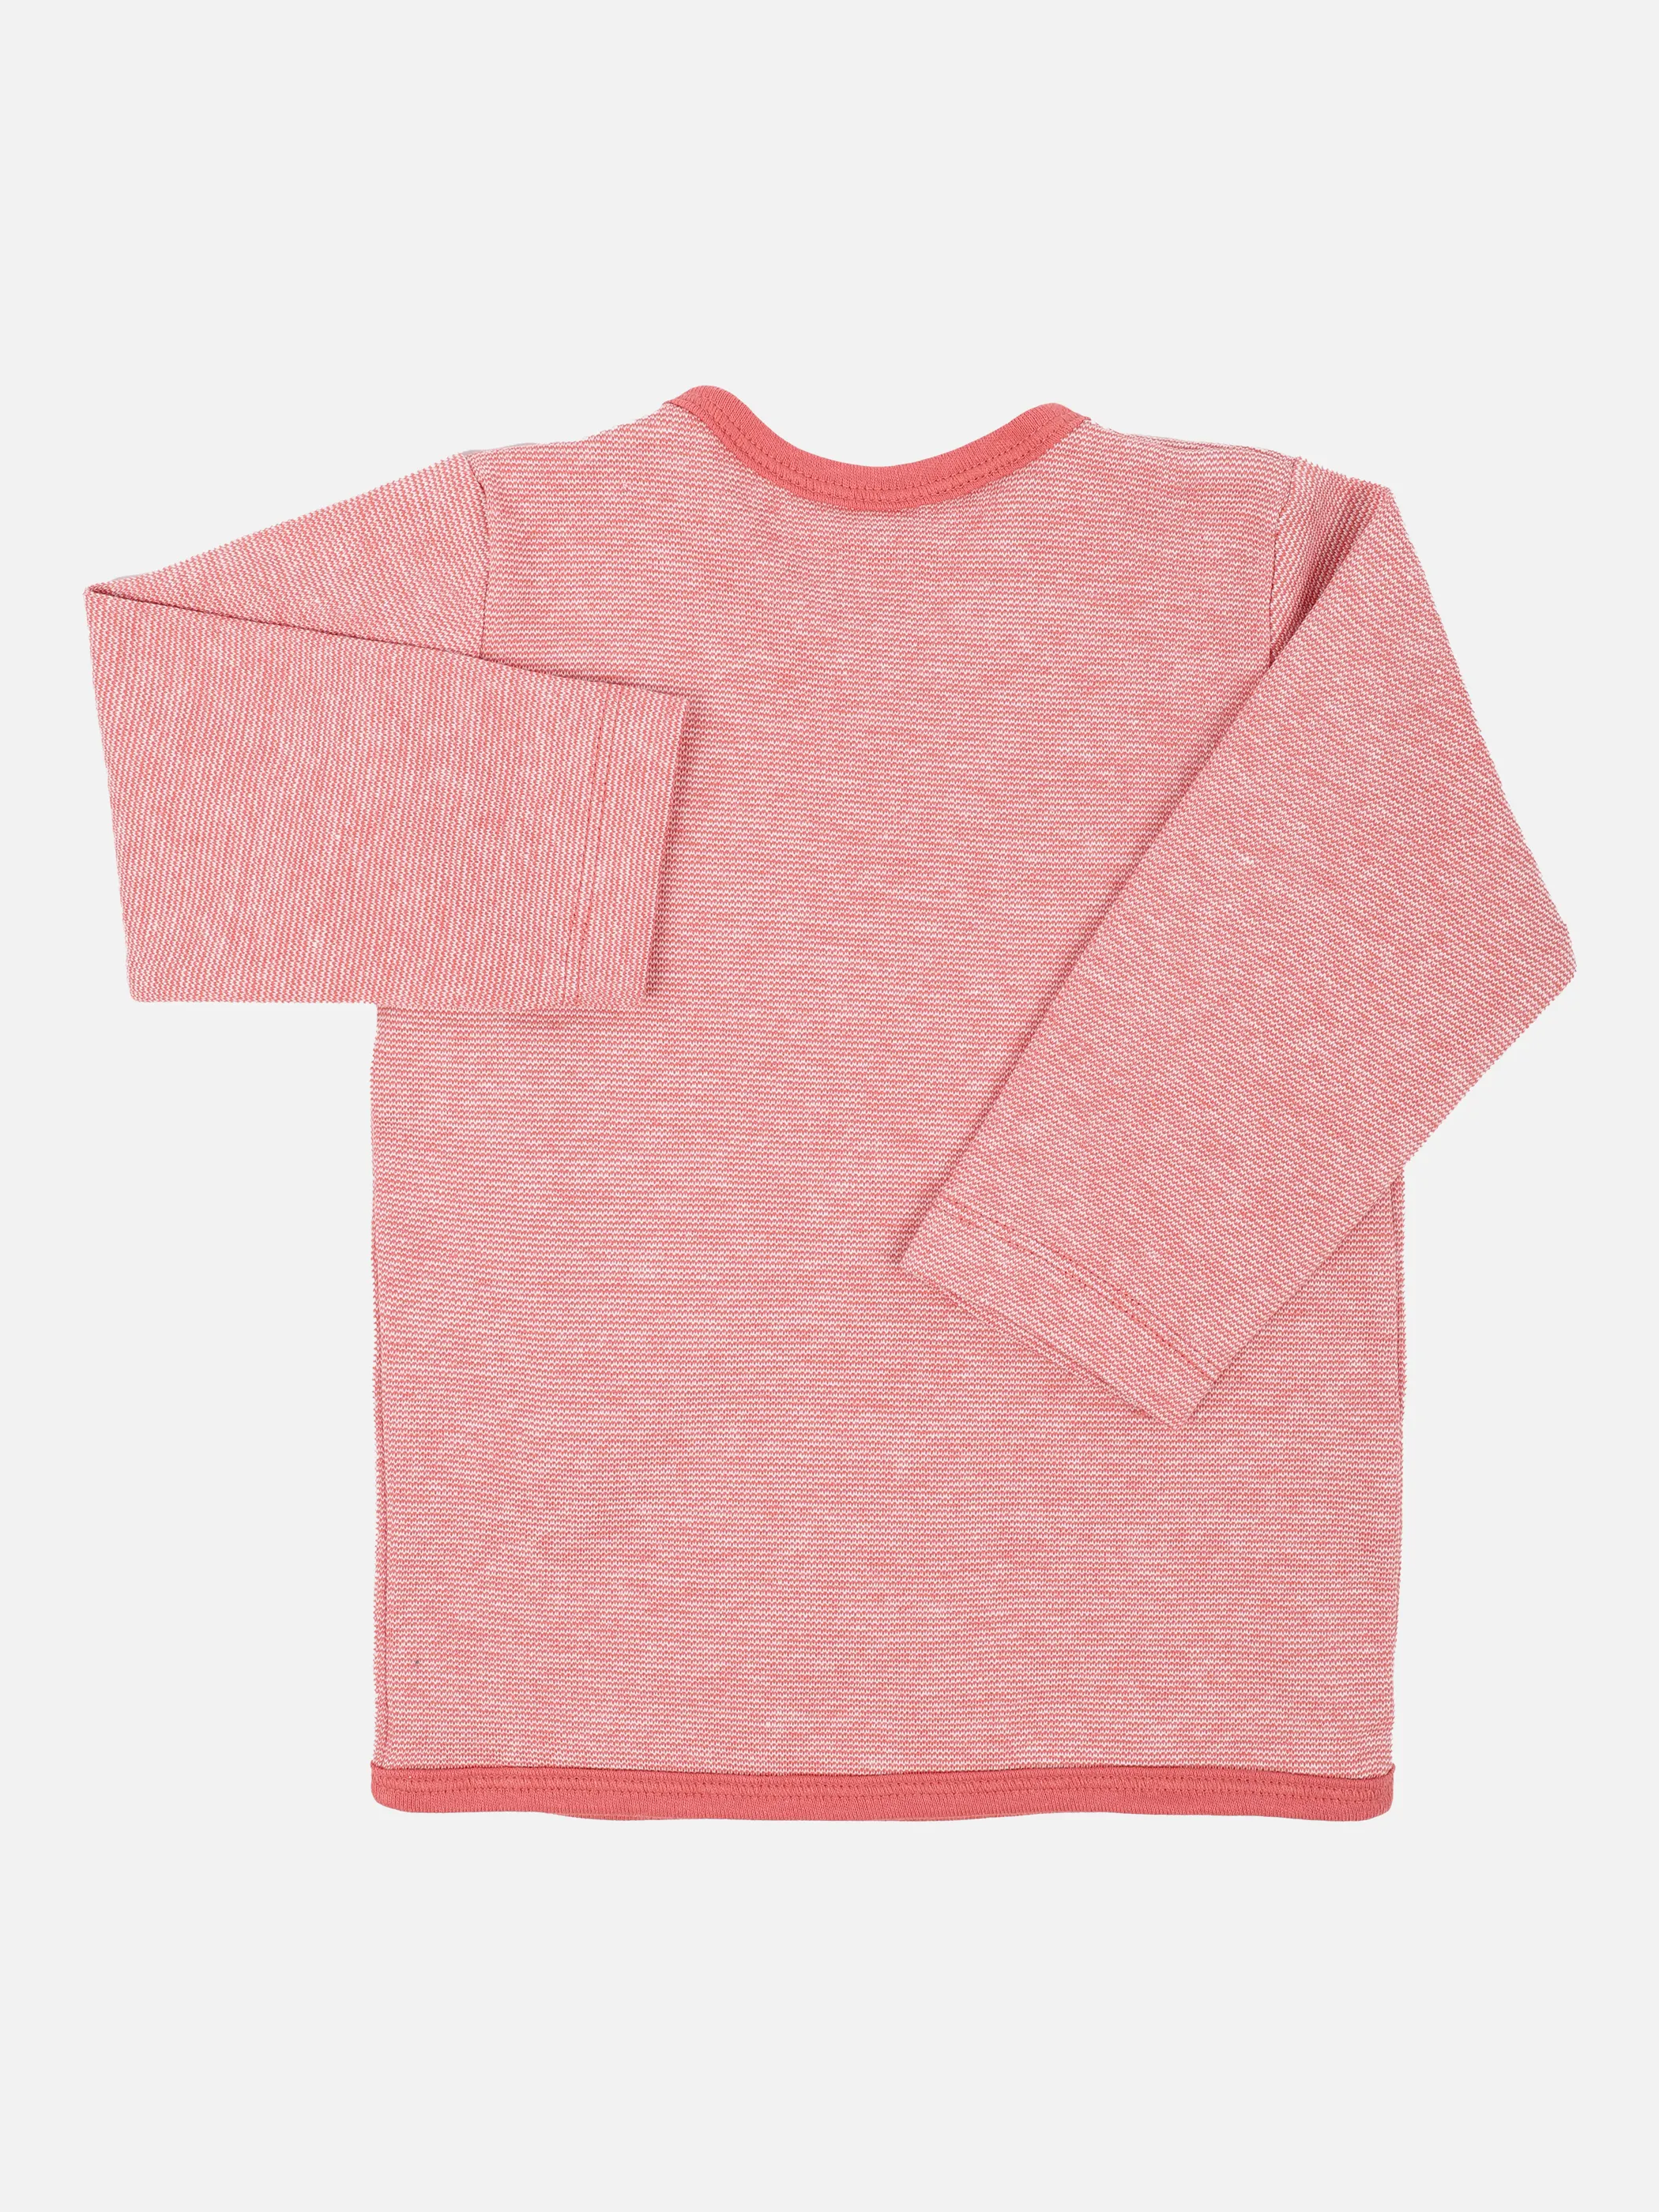 Bubble Gum BG Wickelshirt in mauve mit Pink 871158 MAUVE 3